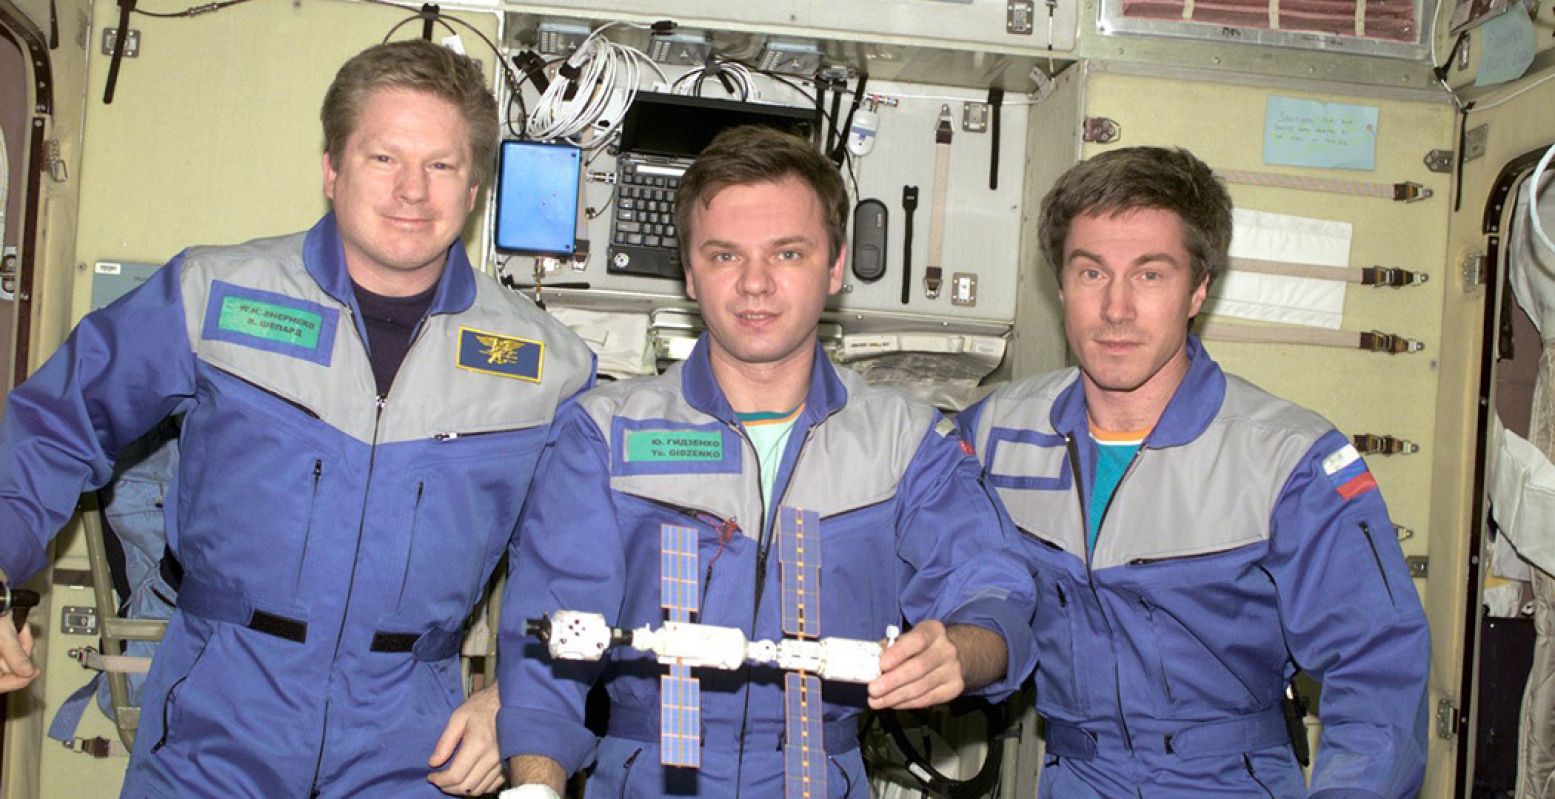 William Shepherd, Joeri Gidzenko en Sergej Krikaljov waren op 2 november 2000 de eerste astronauten aan boord van het internationale ruimtestation ISS. Foto: NASA